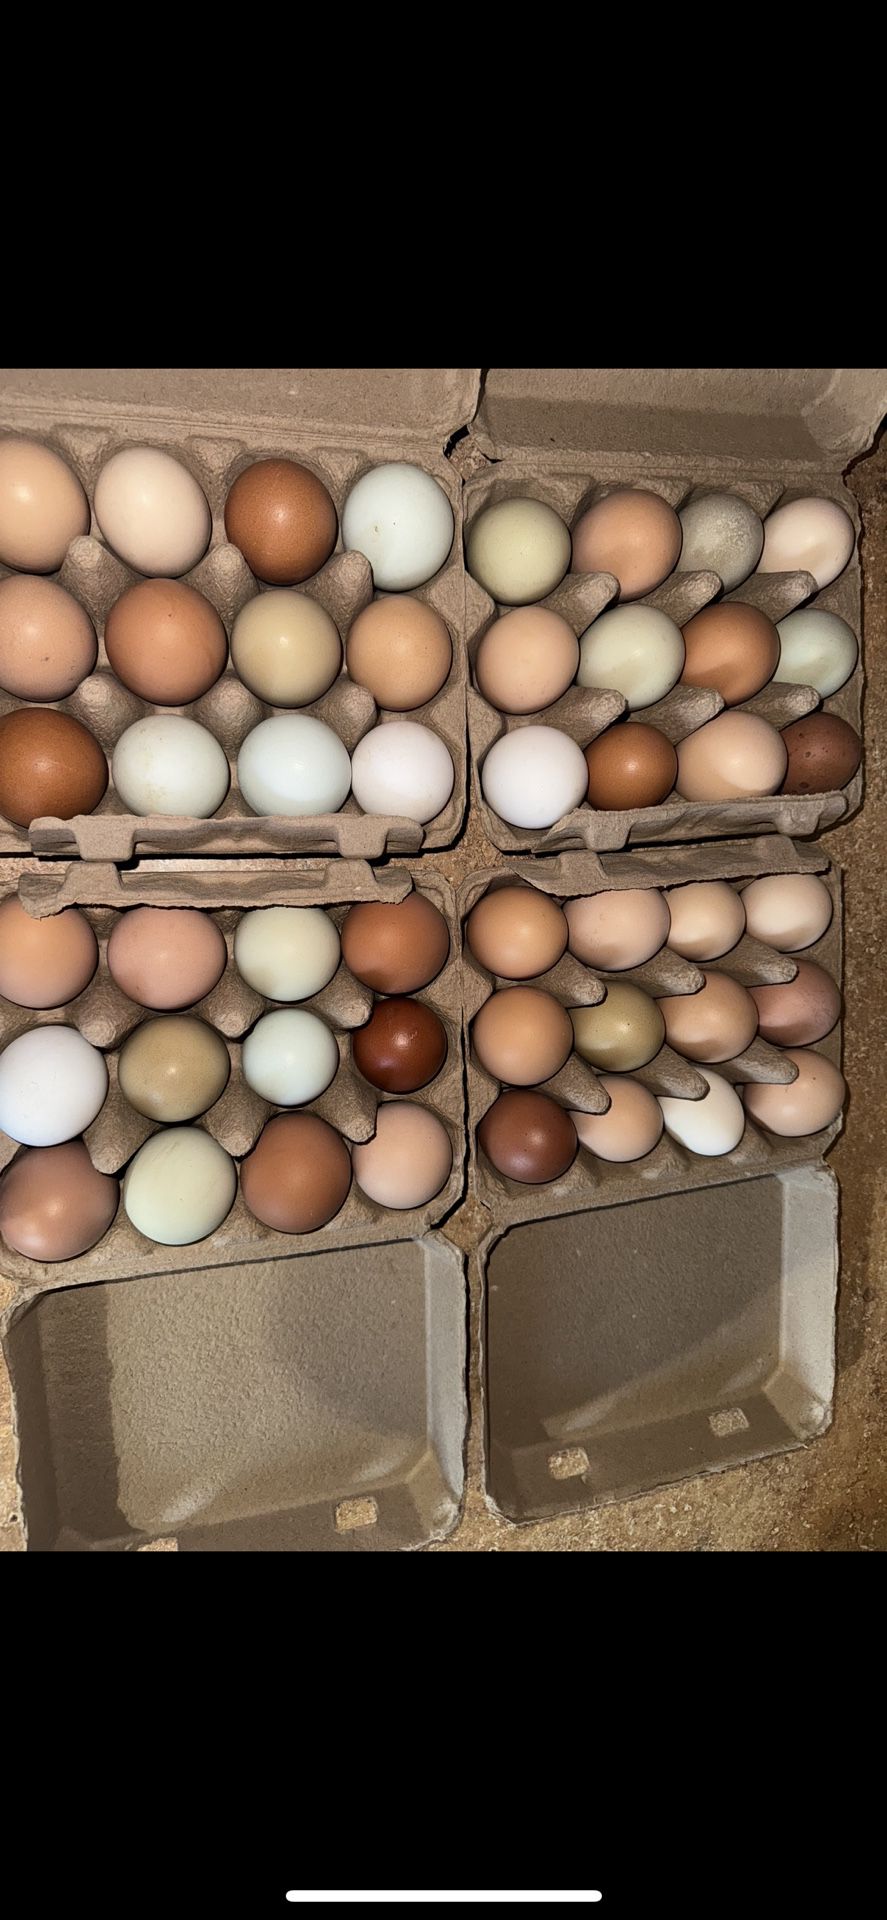 Farm Fresh Eggs! 